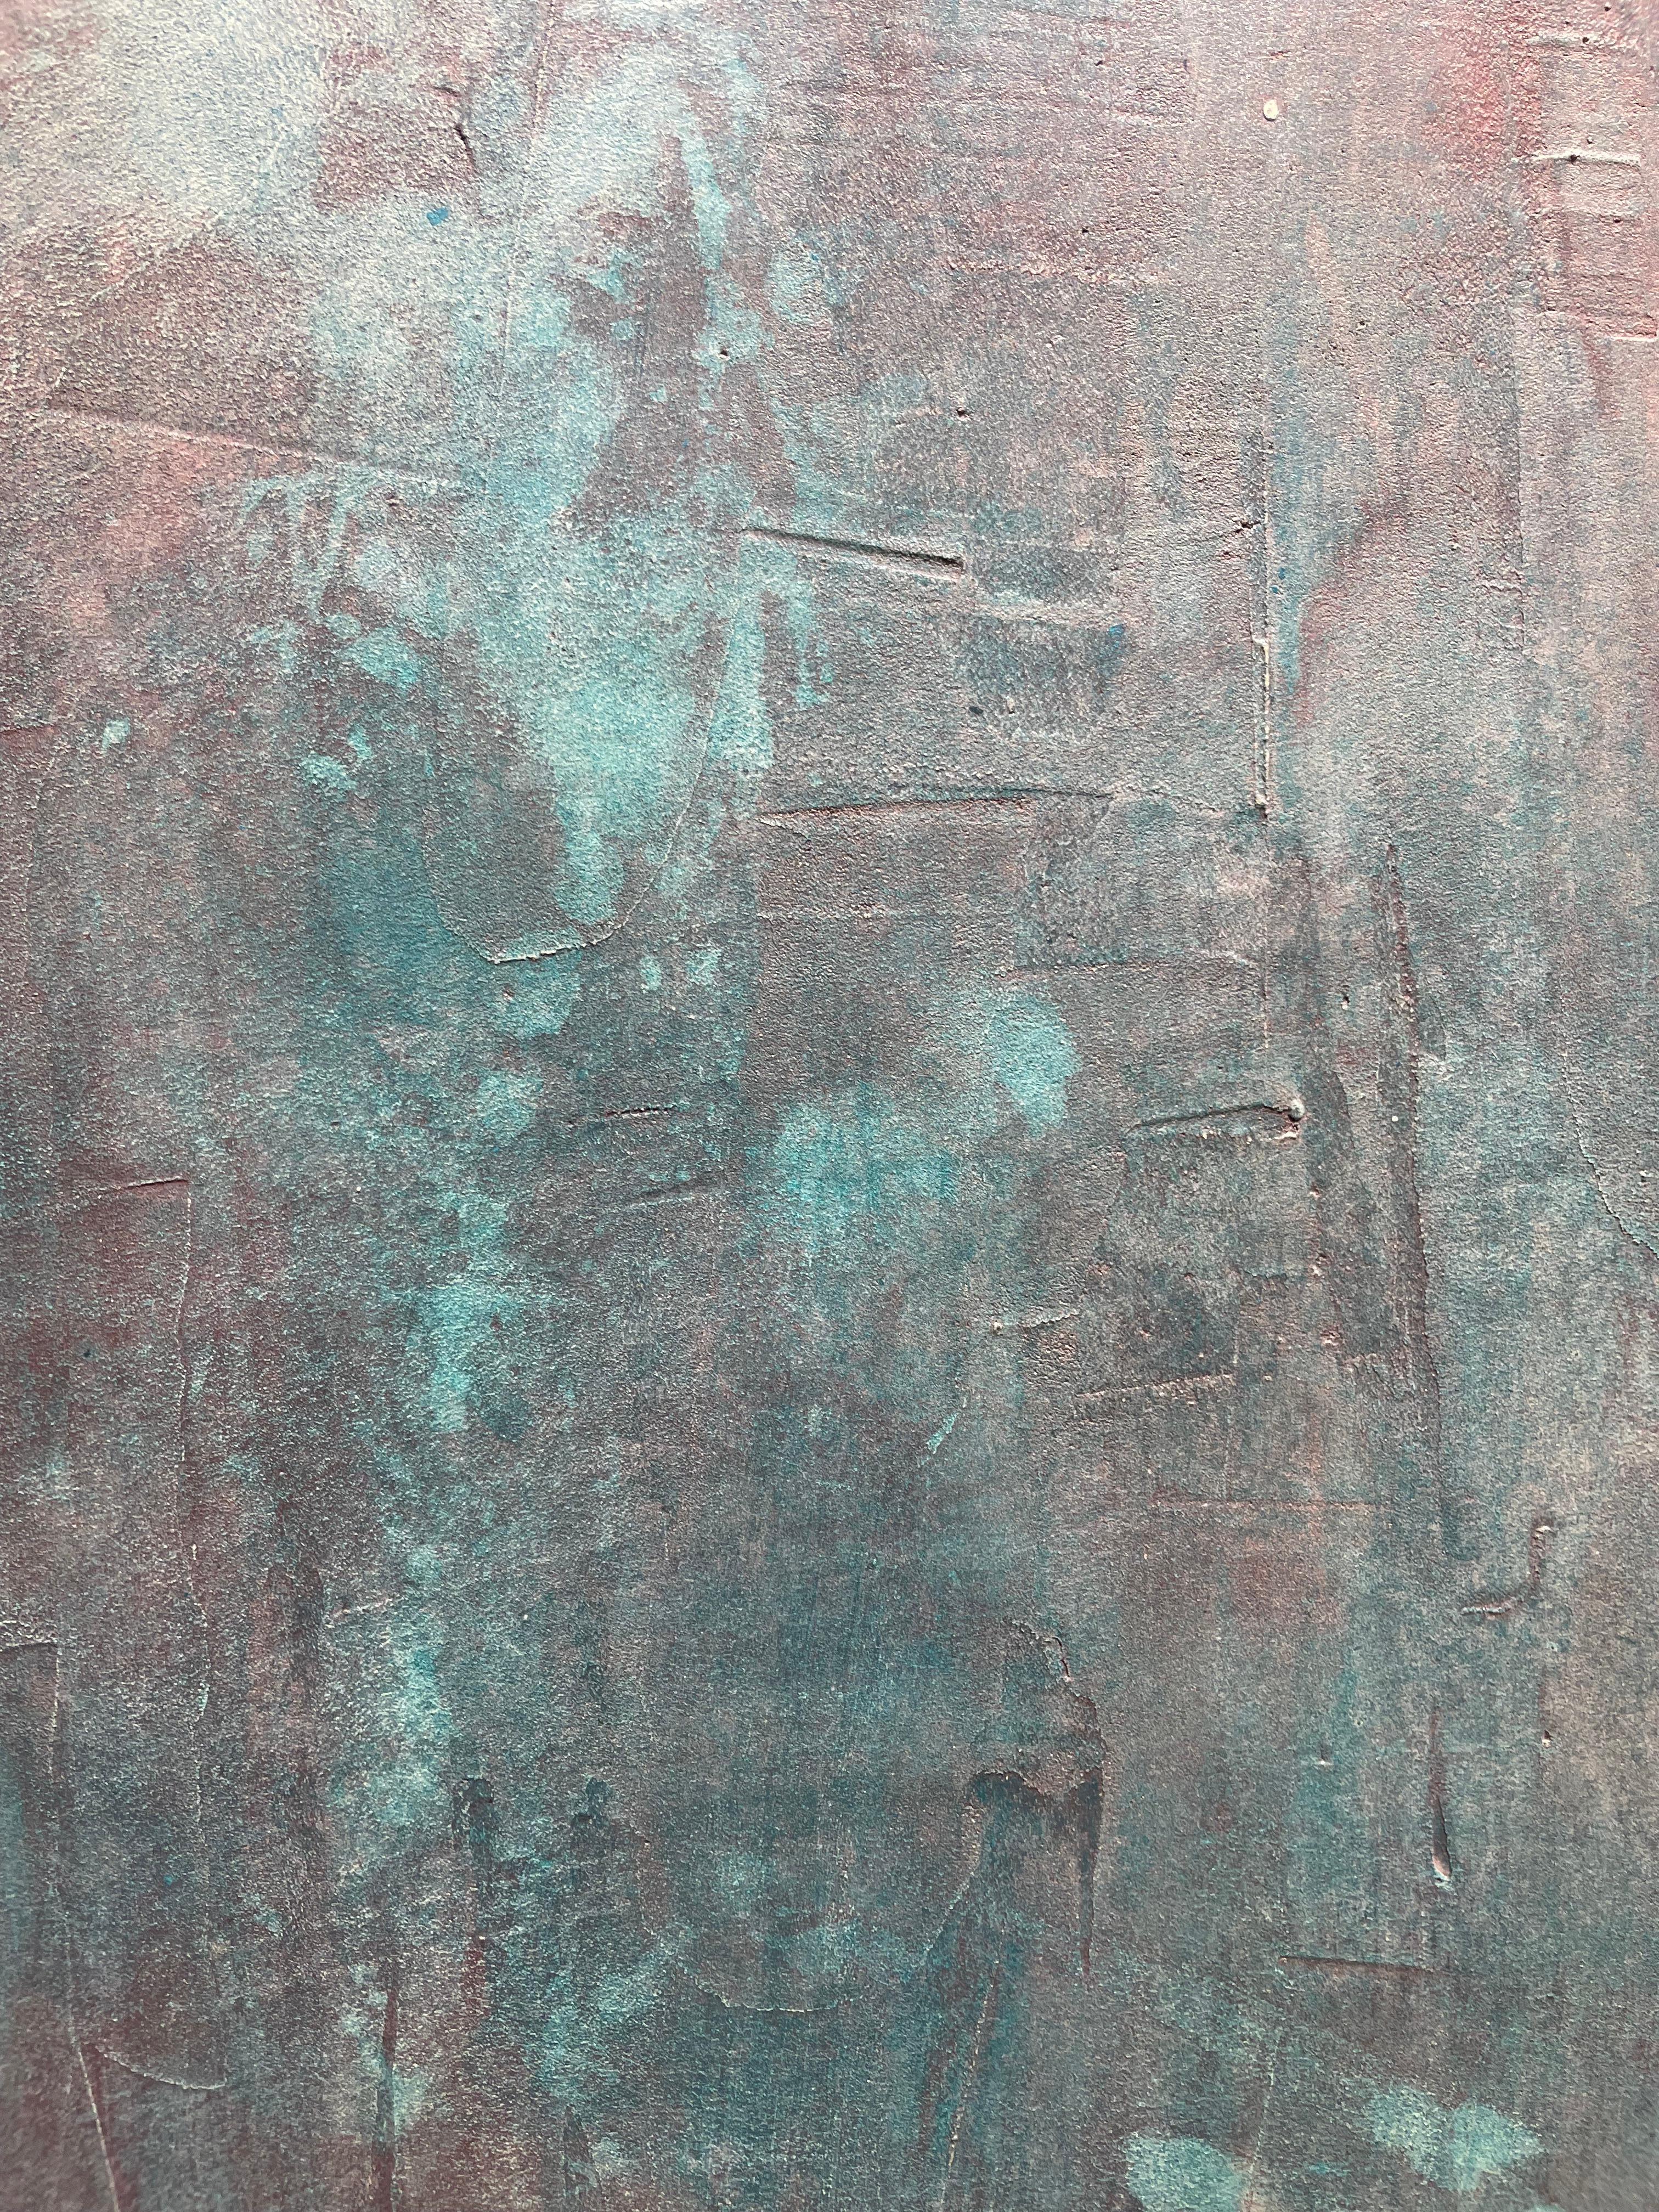 Aigua Viva - 21e siècle, art abstrait, ciment sur bois, tons terreux - Painting de Núria Guinovart